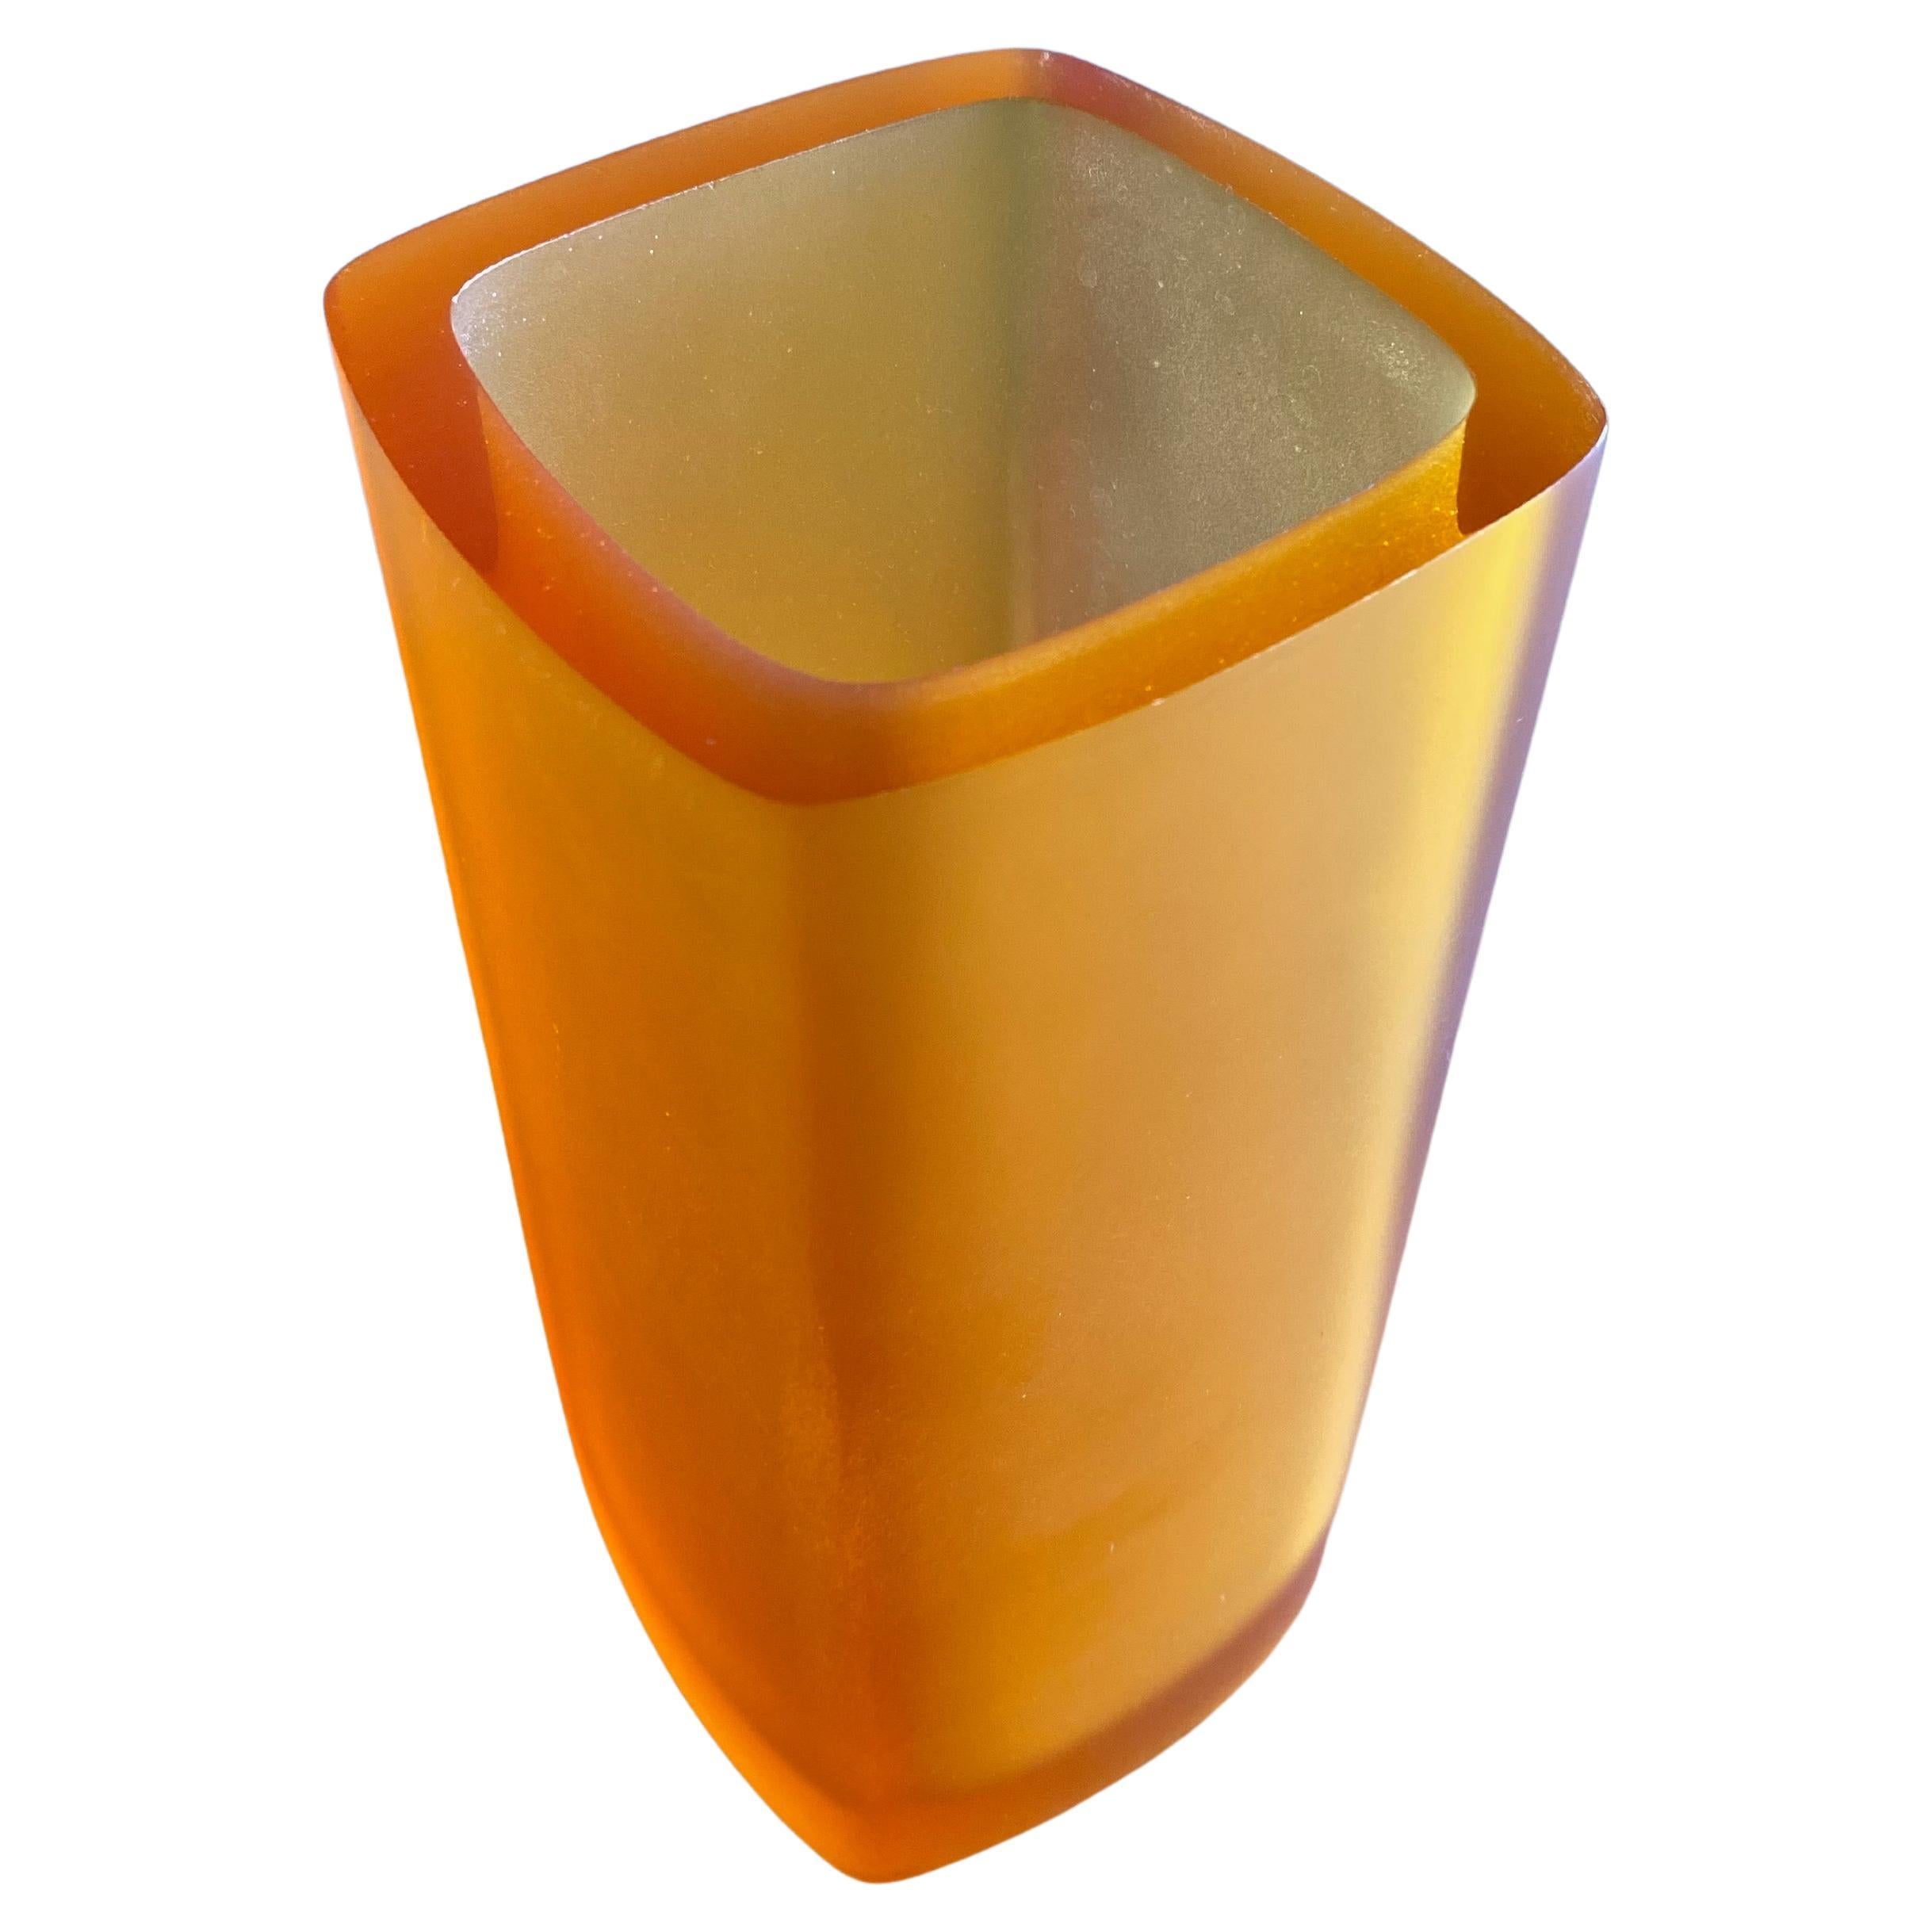 1970s orange plastic vase.